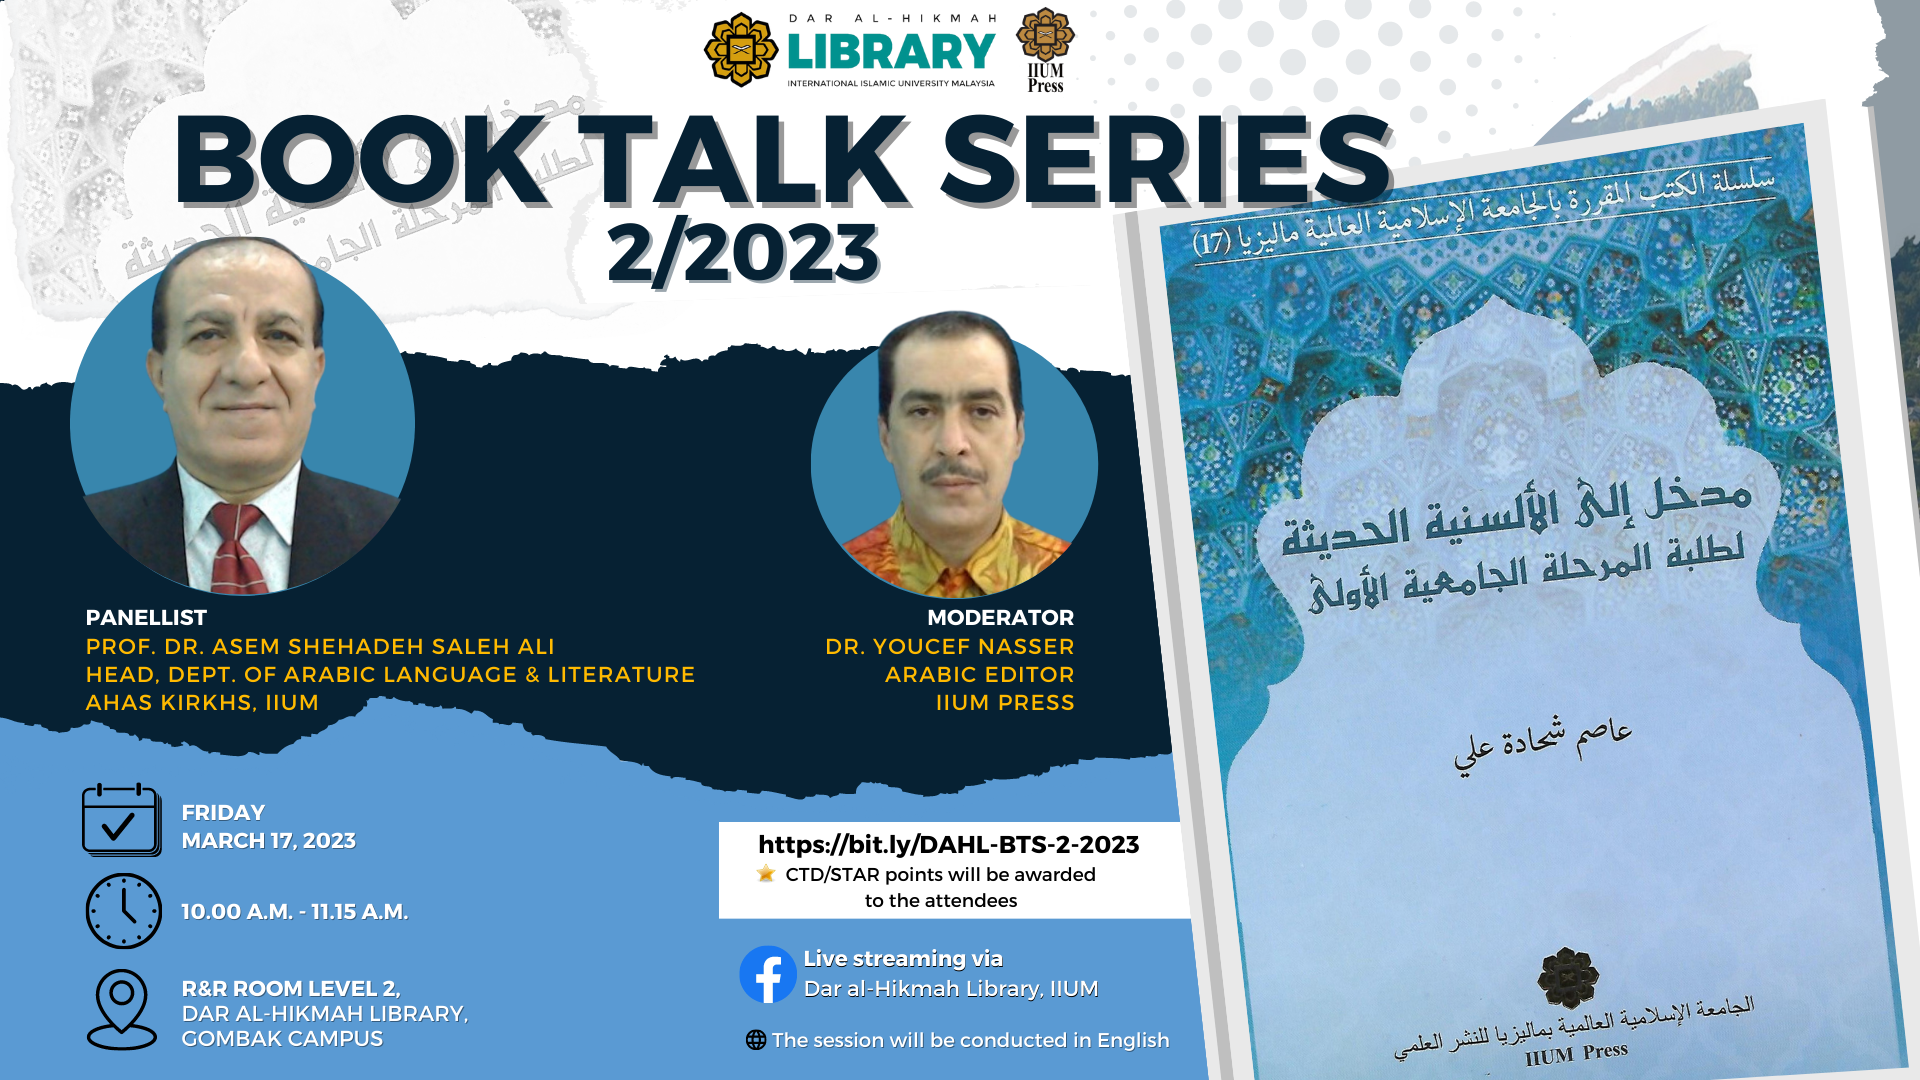 Invitation to Dar al-Hikmah Library Book Talk Series 2/2023